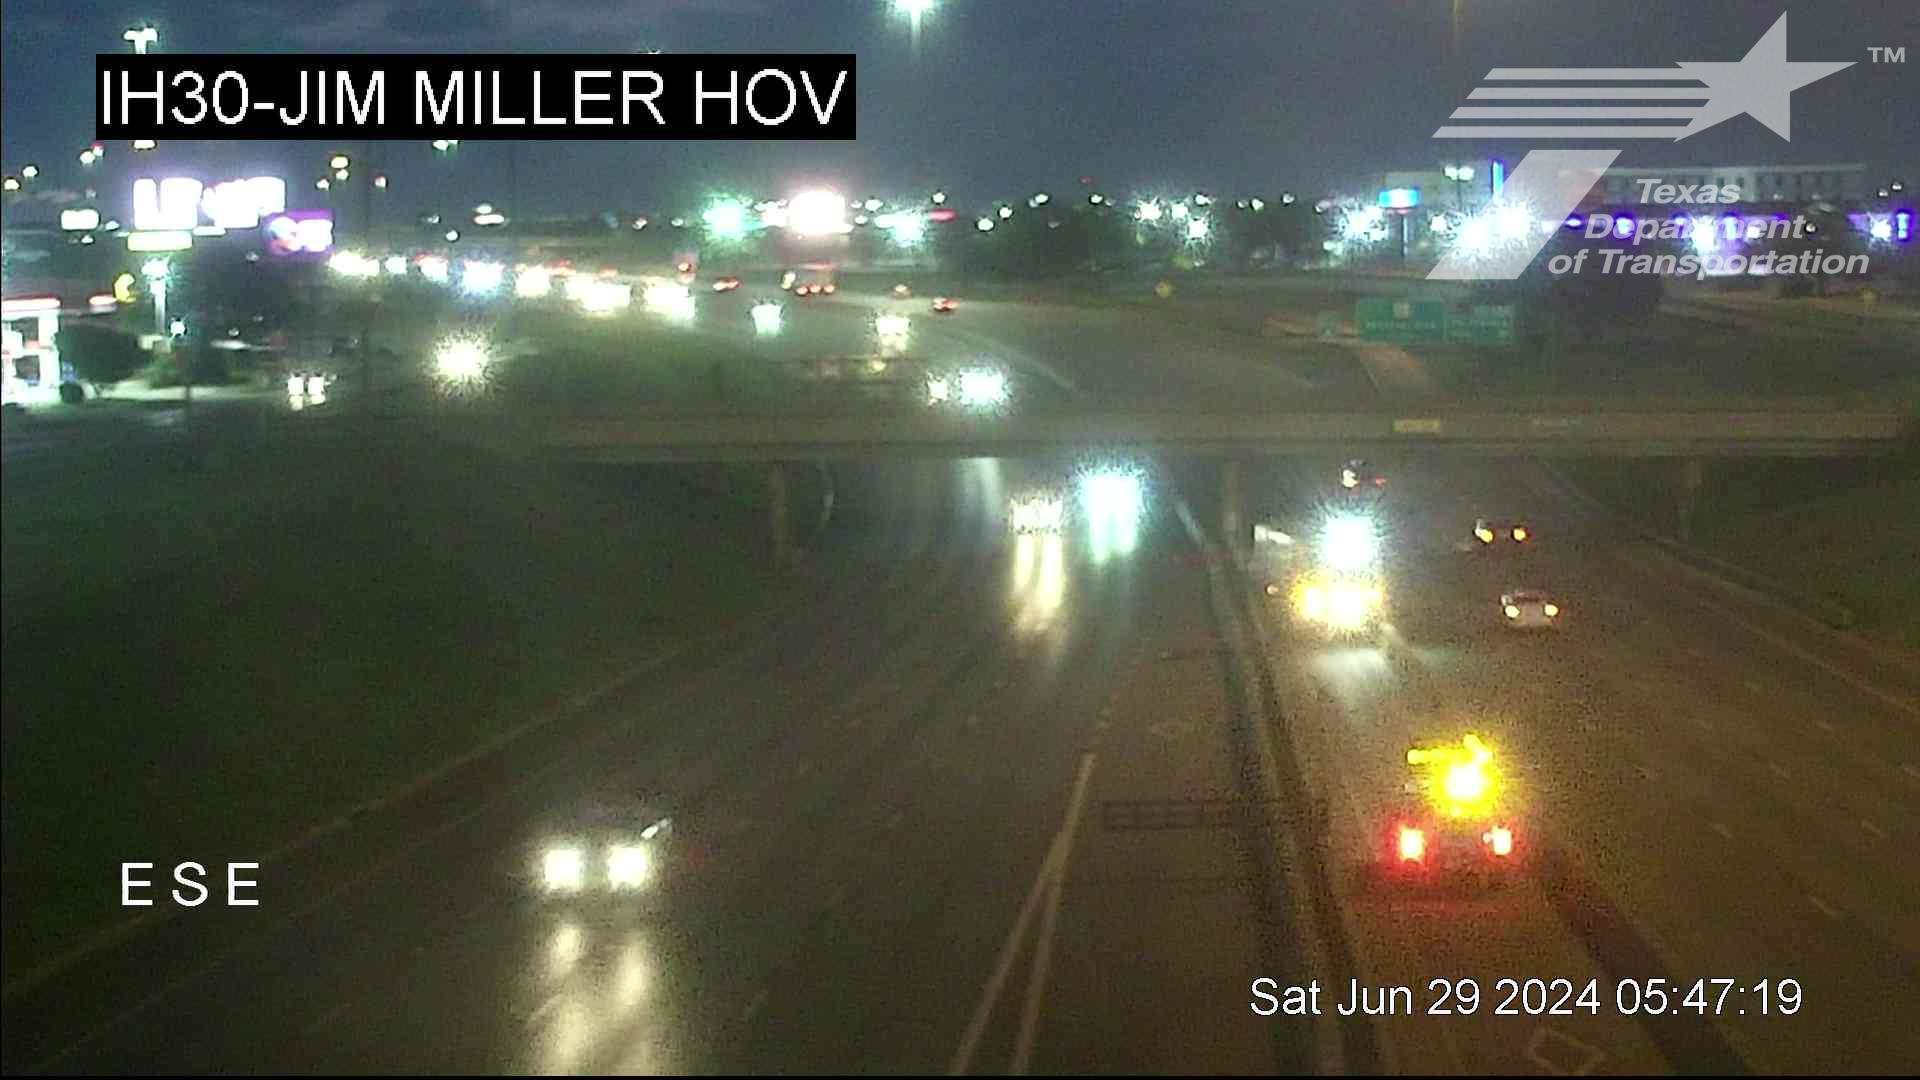 Dallas › East: I-30 @ Jim Miller HOV Traffic Camera